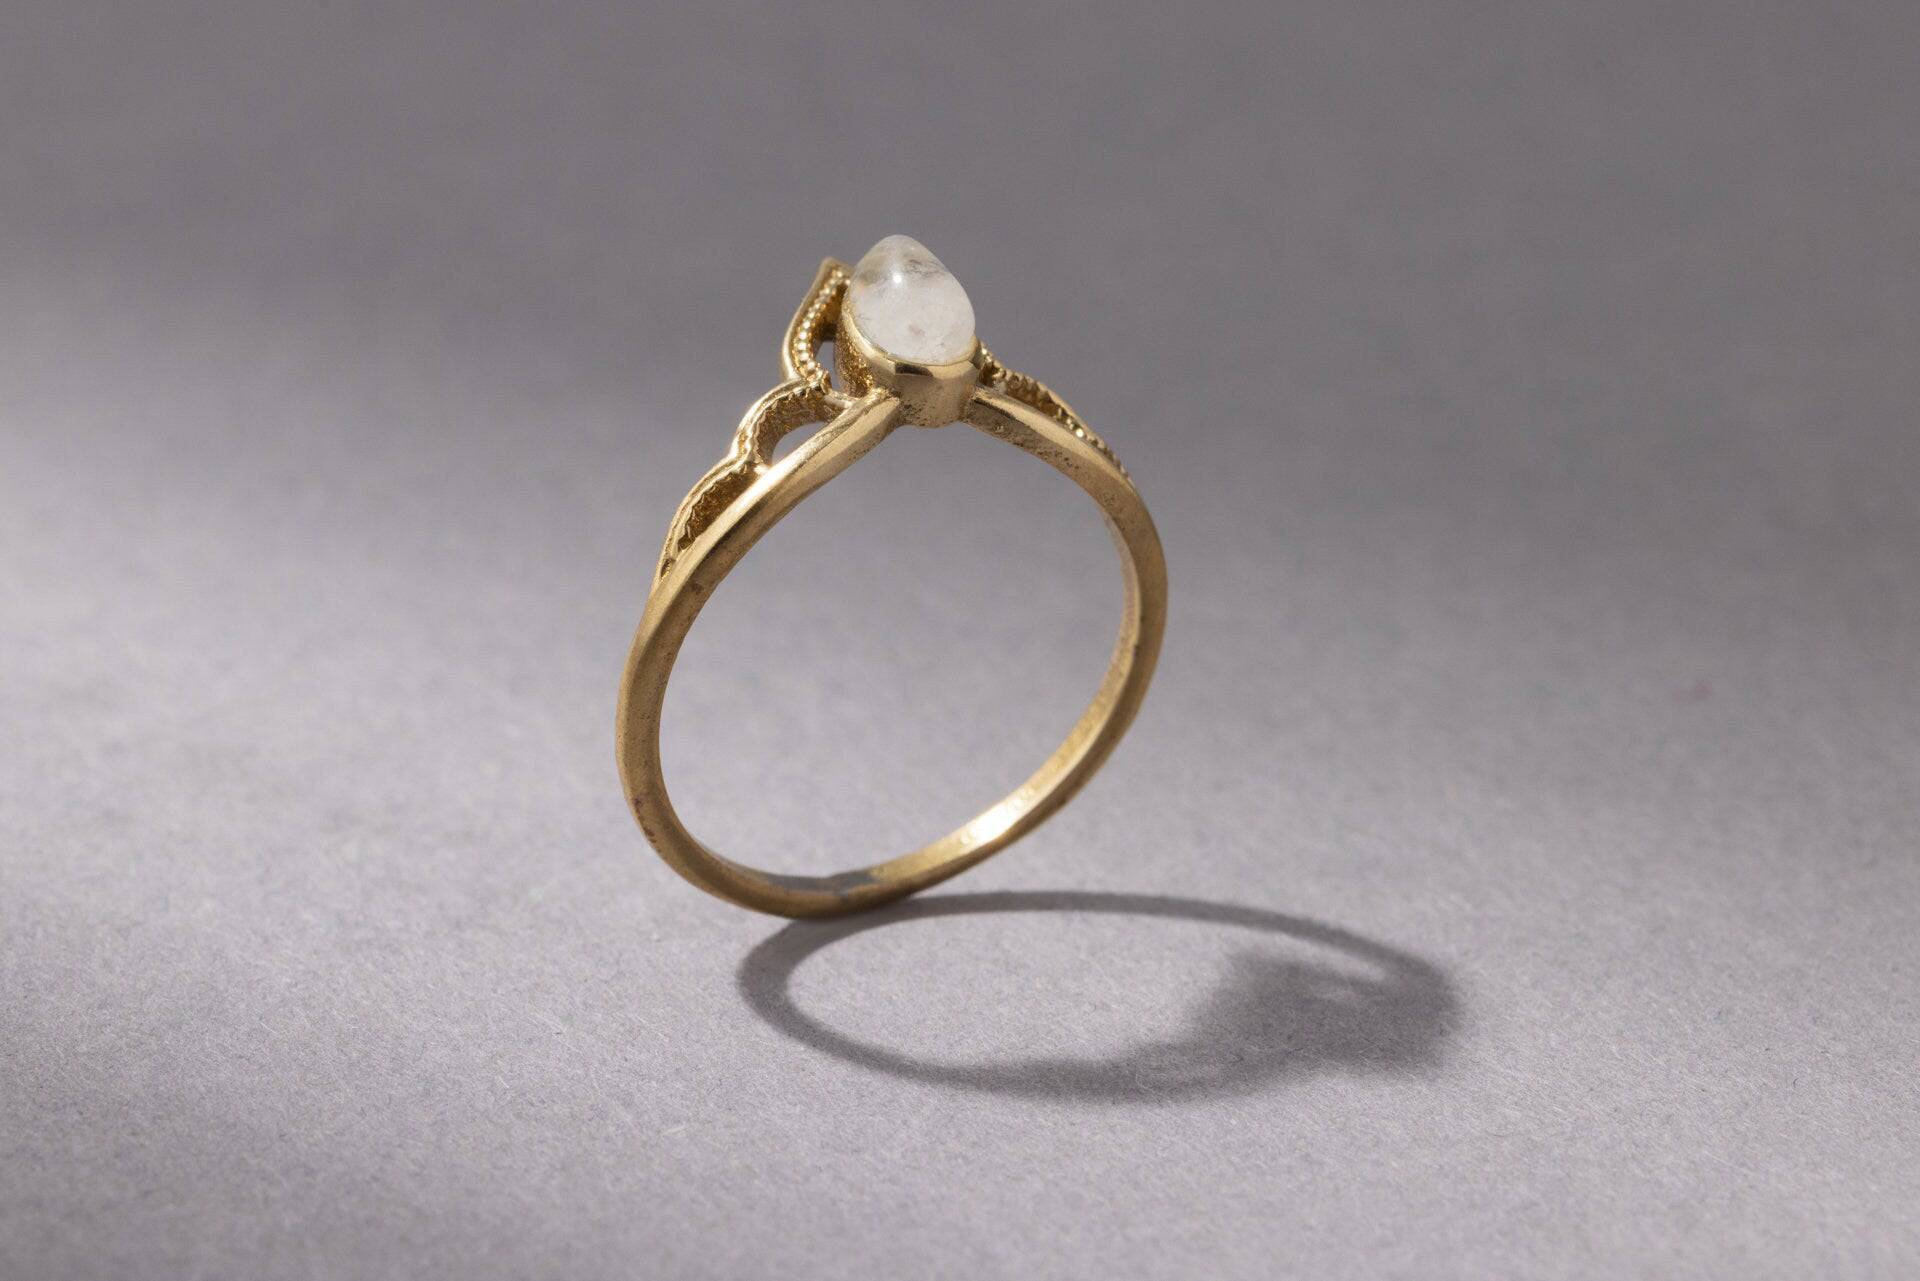 Tiara Kronen Ring mit Mondstein Spitze gold handgemacht - NooeBerlin